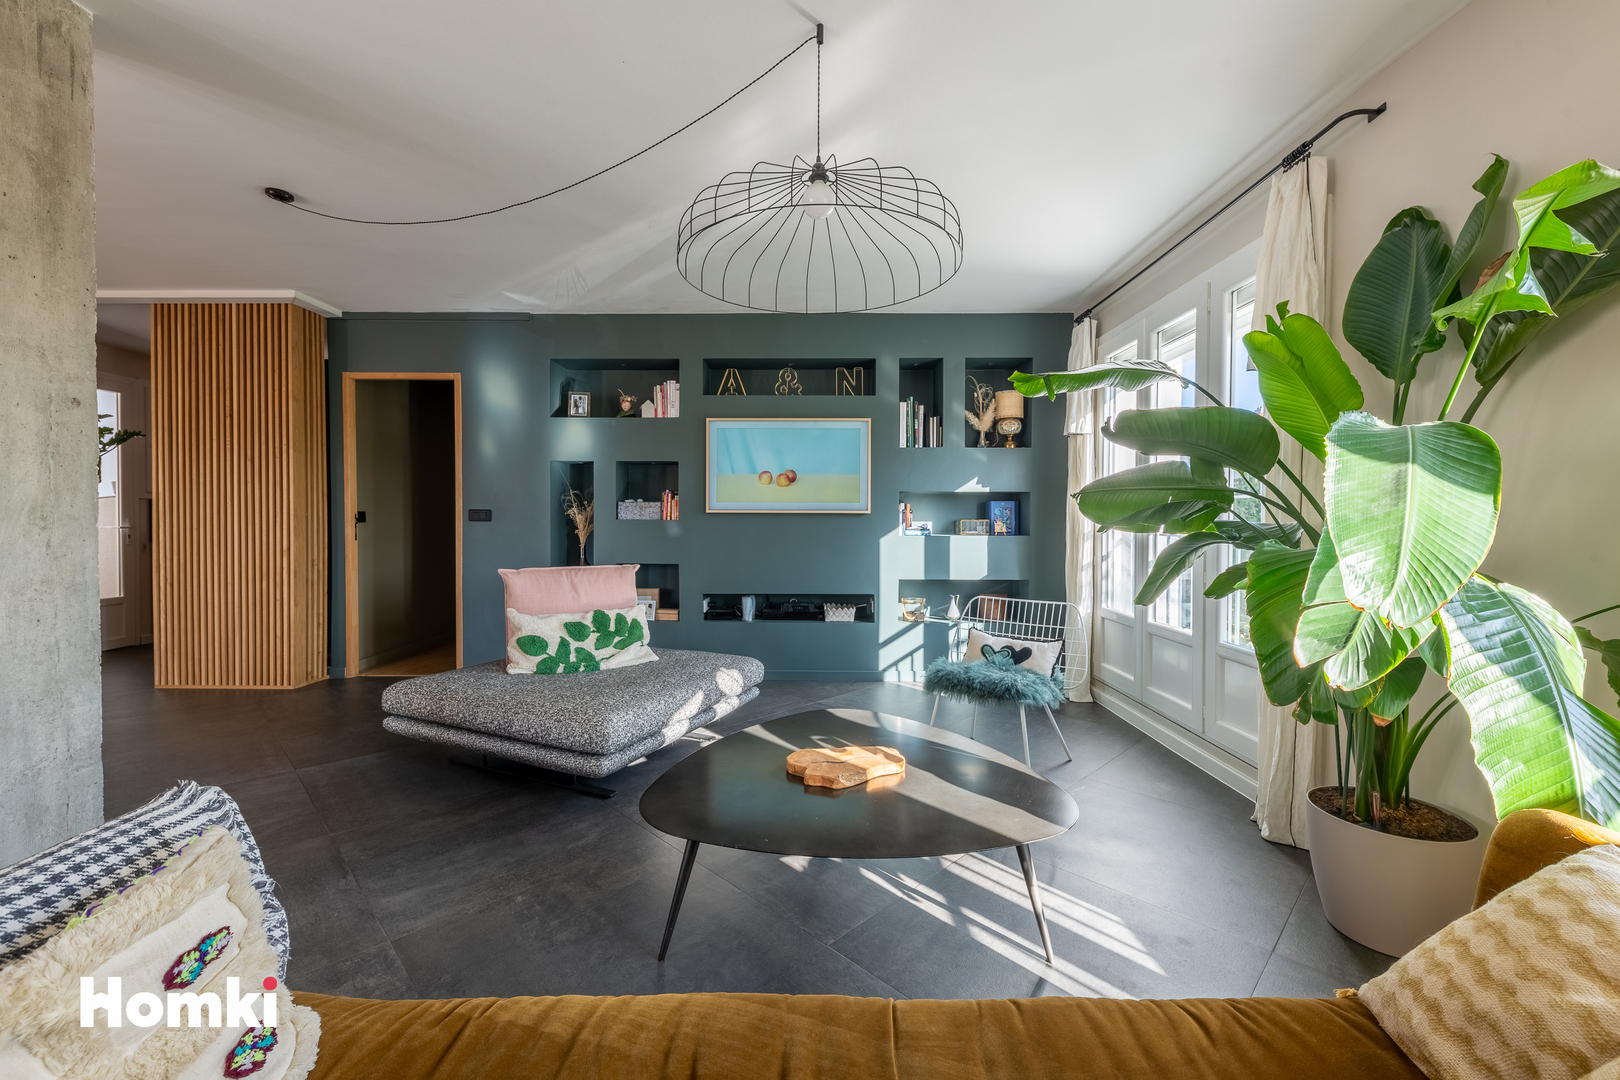 Homki - Vente Appartement  de 93.0 m² à Lyon 69005